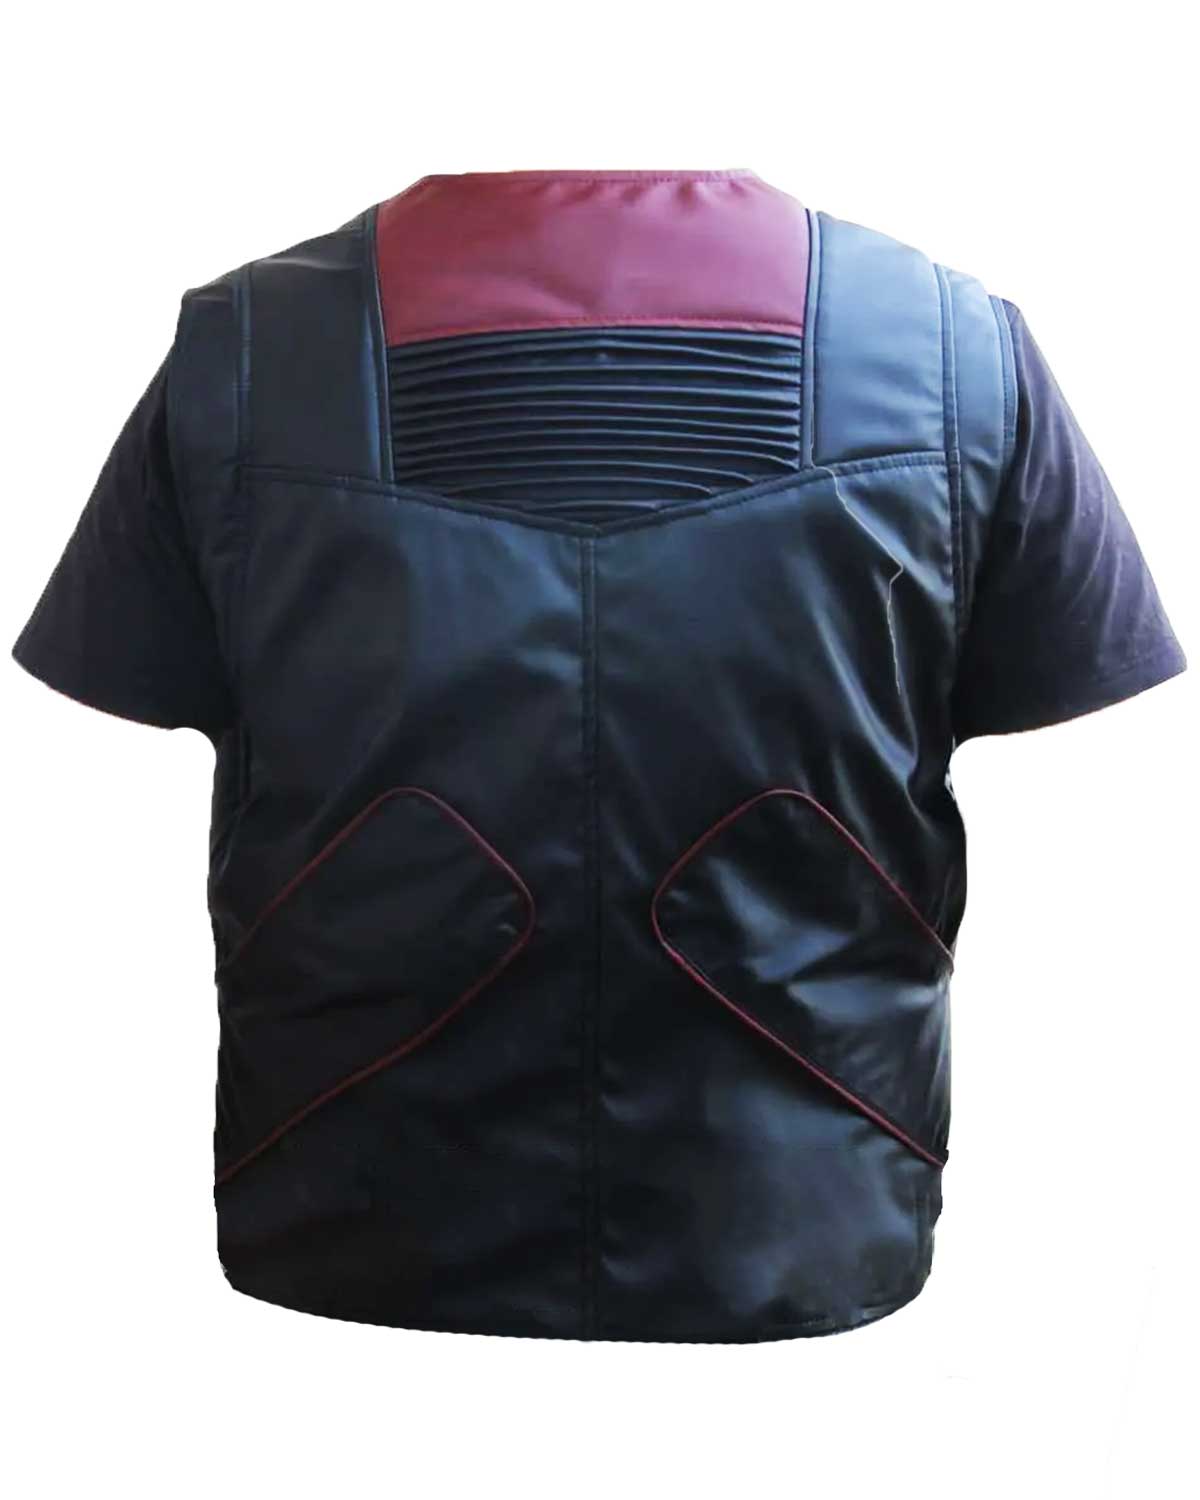 Elite Deadpool Colossus Leather Vest